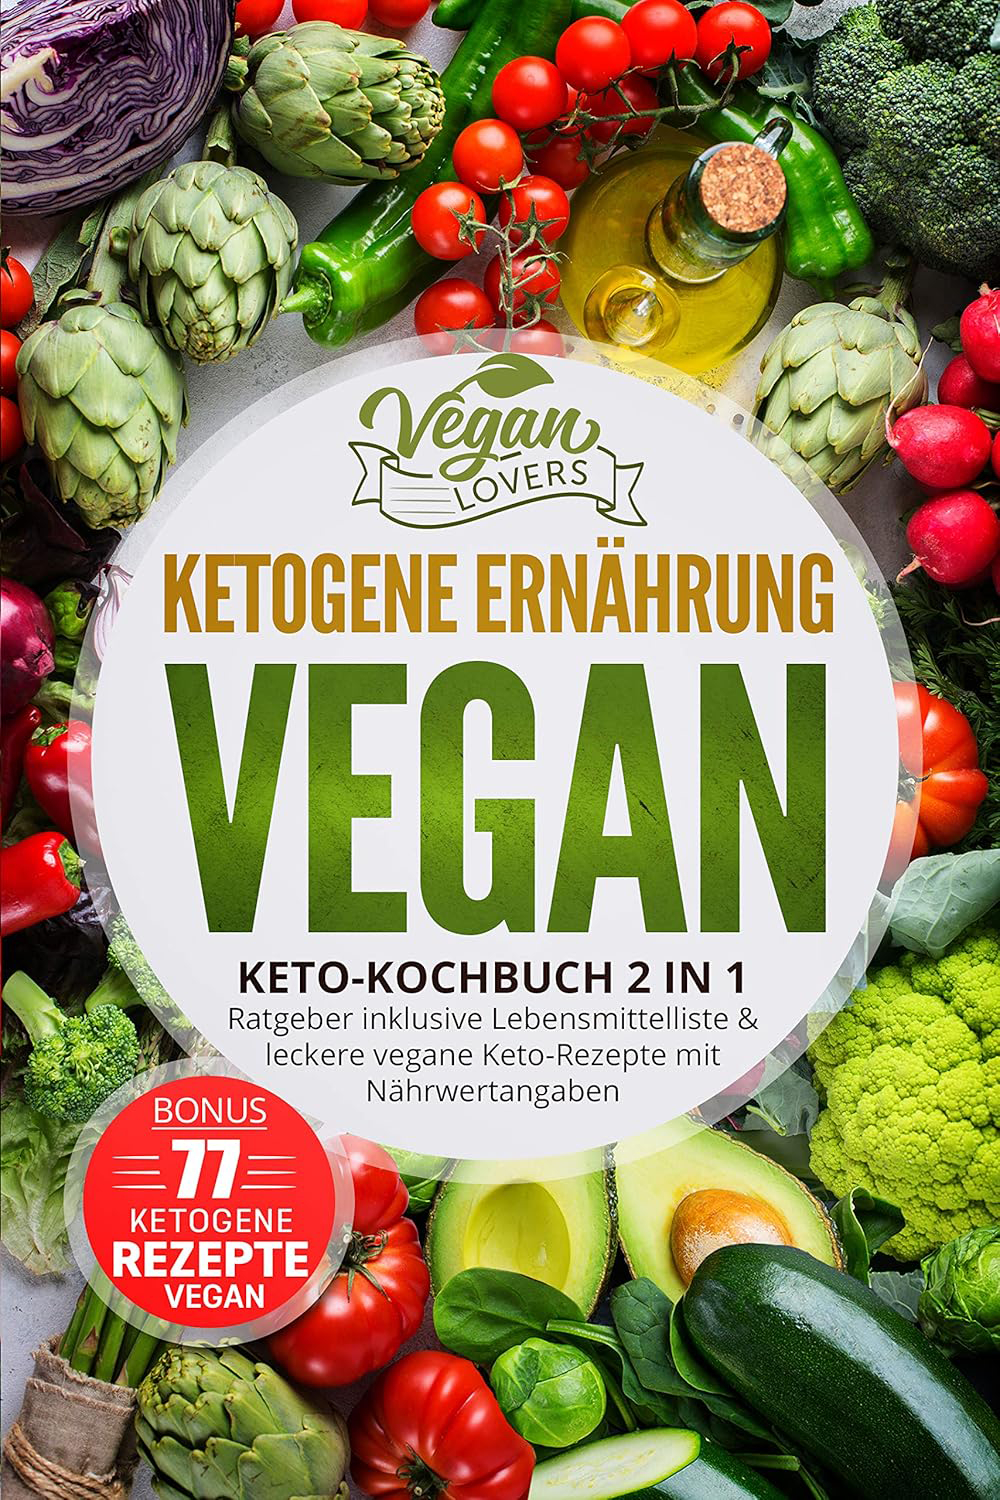 Ketogene Ernährung VEGAN Keto Kochbuch 2in1 Ratgeber inkl  Lebensmittelliste und 77 vegane Low Carb Rezepte für die Keto Diät mit Nährwertangaben